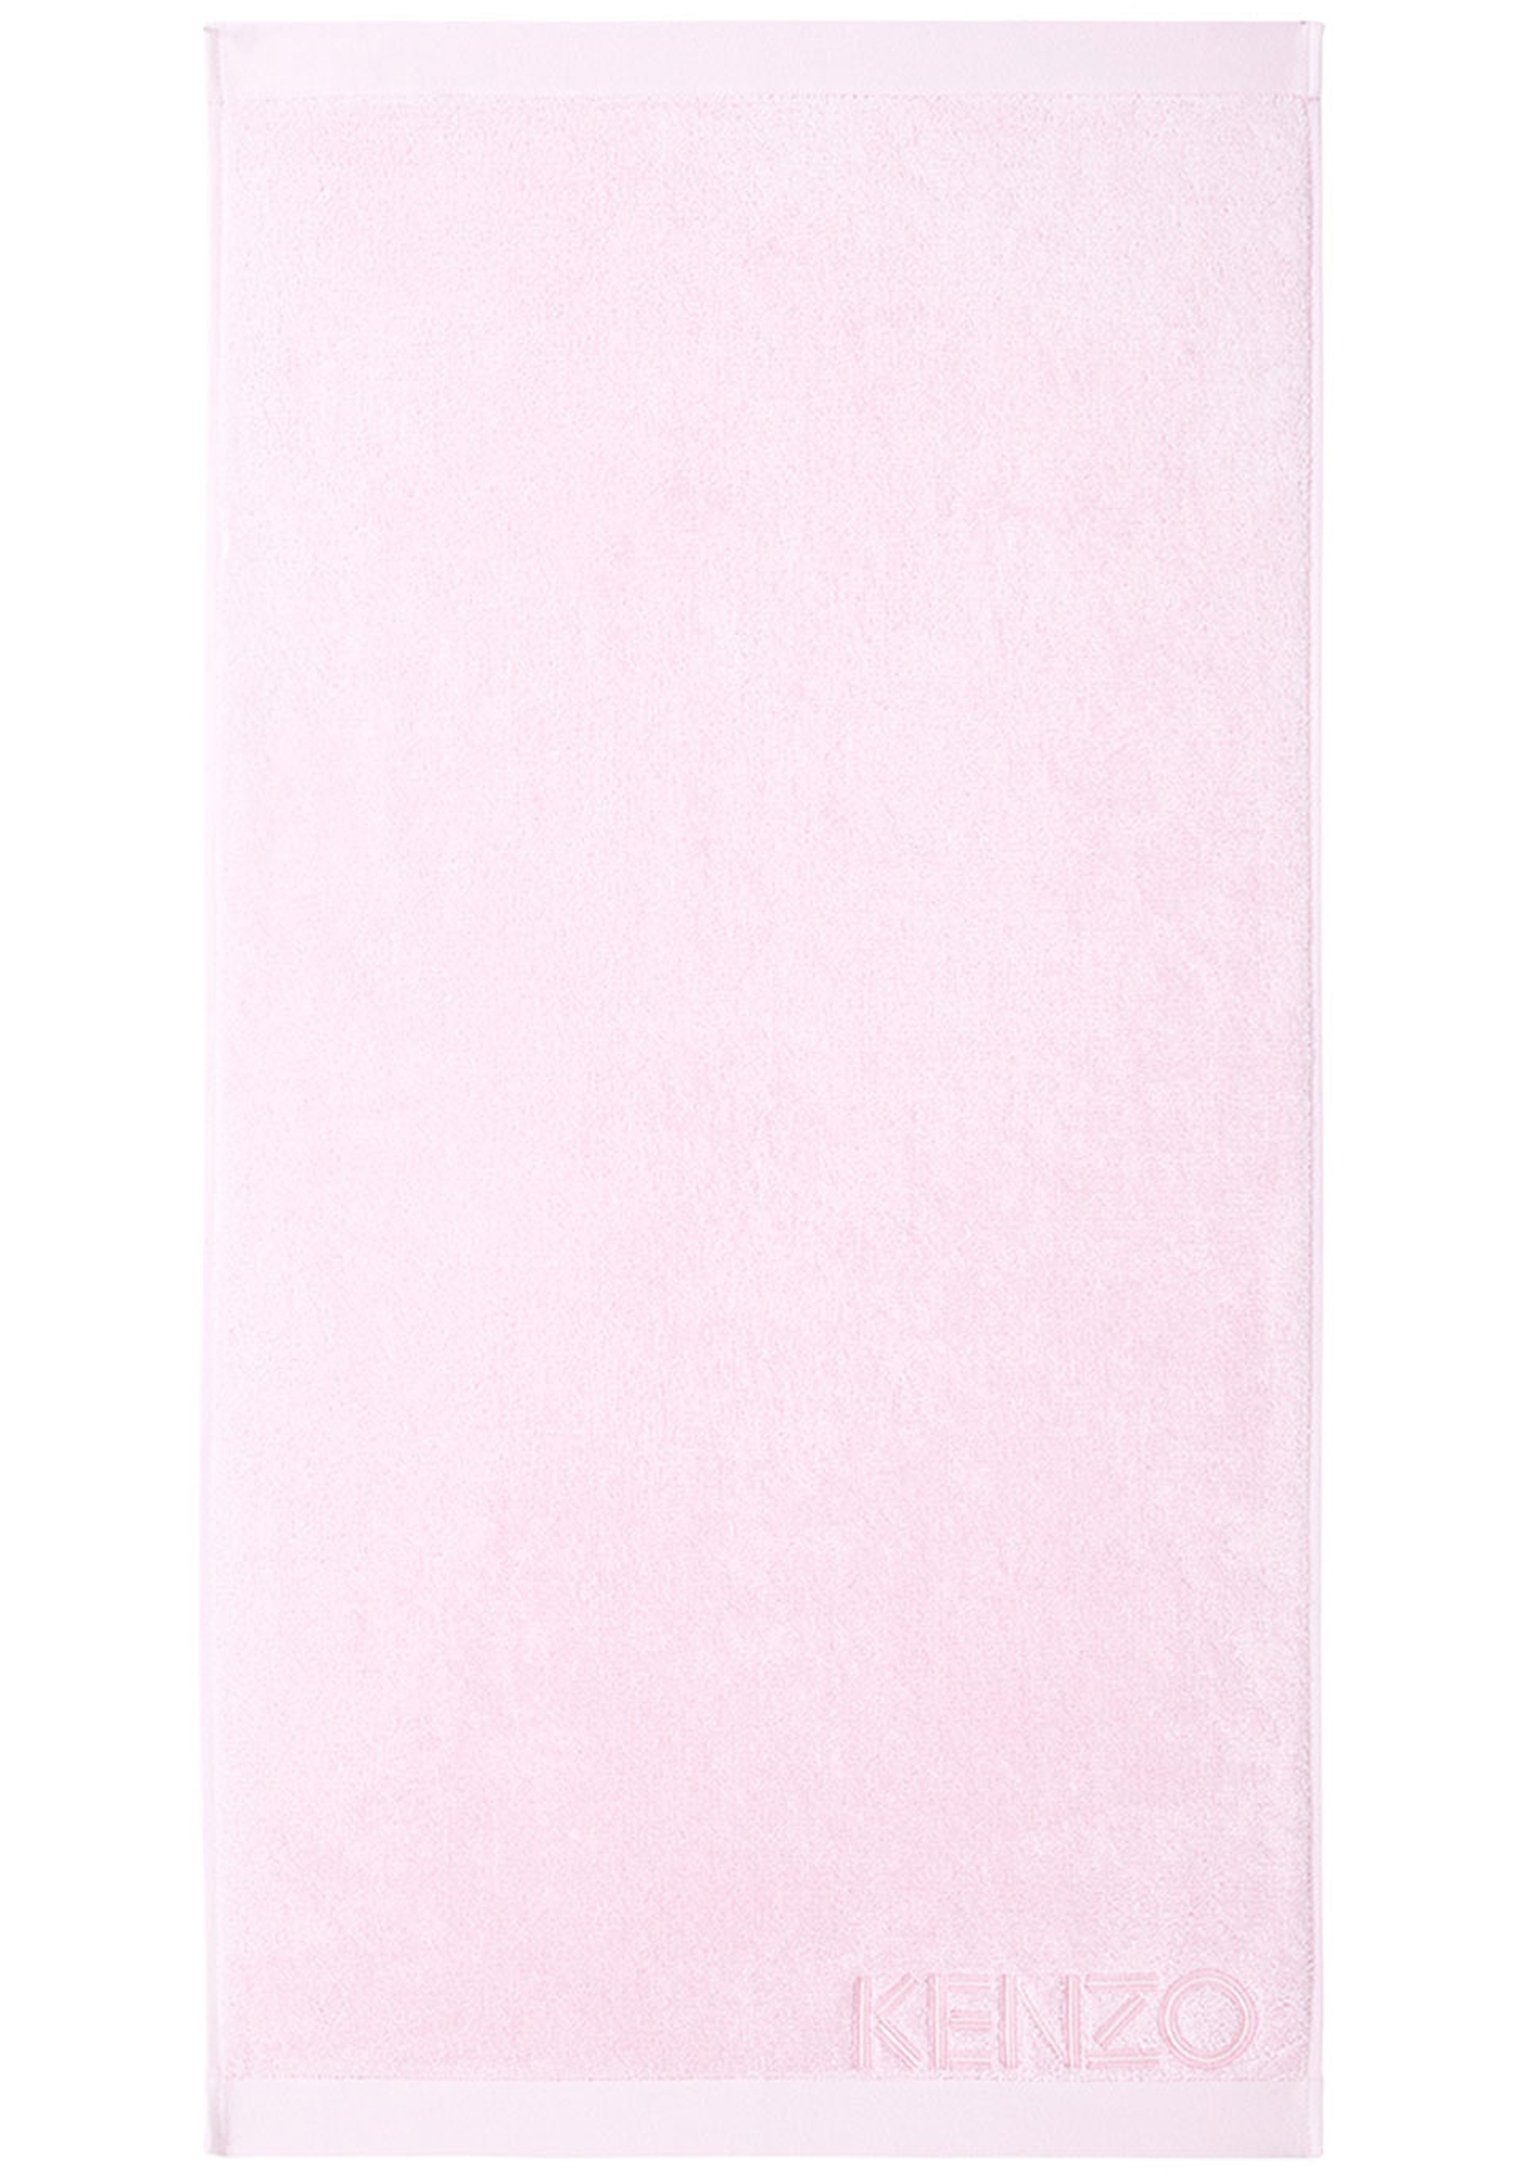 KENZO MAISON Gästehandtücher ICONIC (2tlg), 100% Design Baumwolle, klassischem mit ROSE